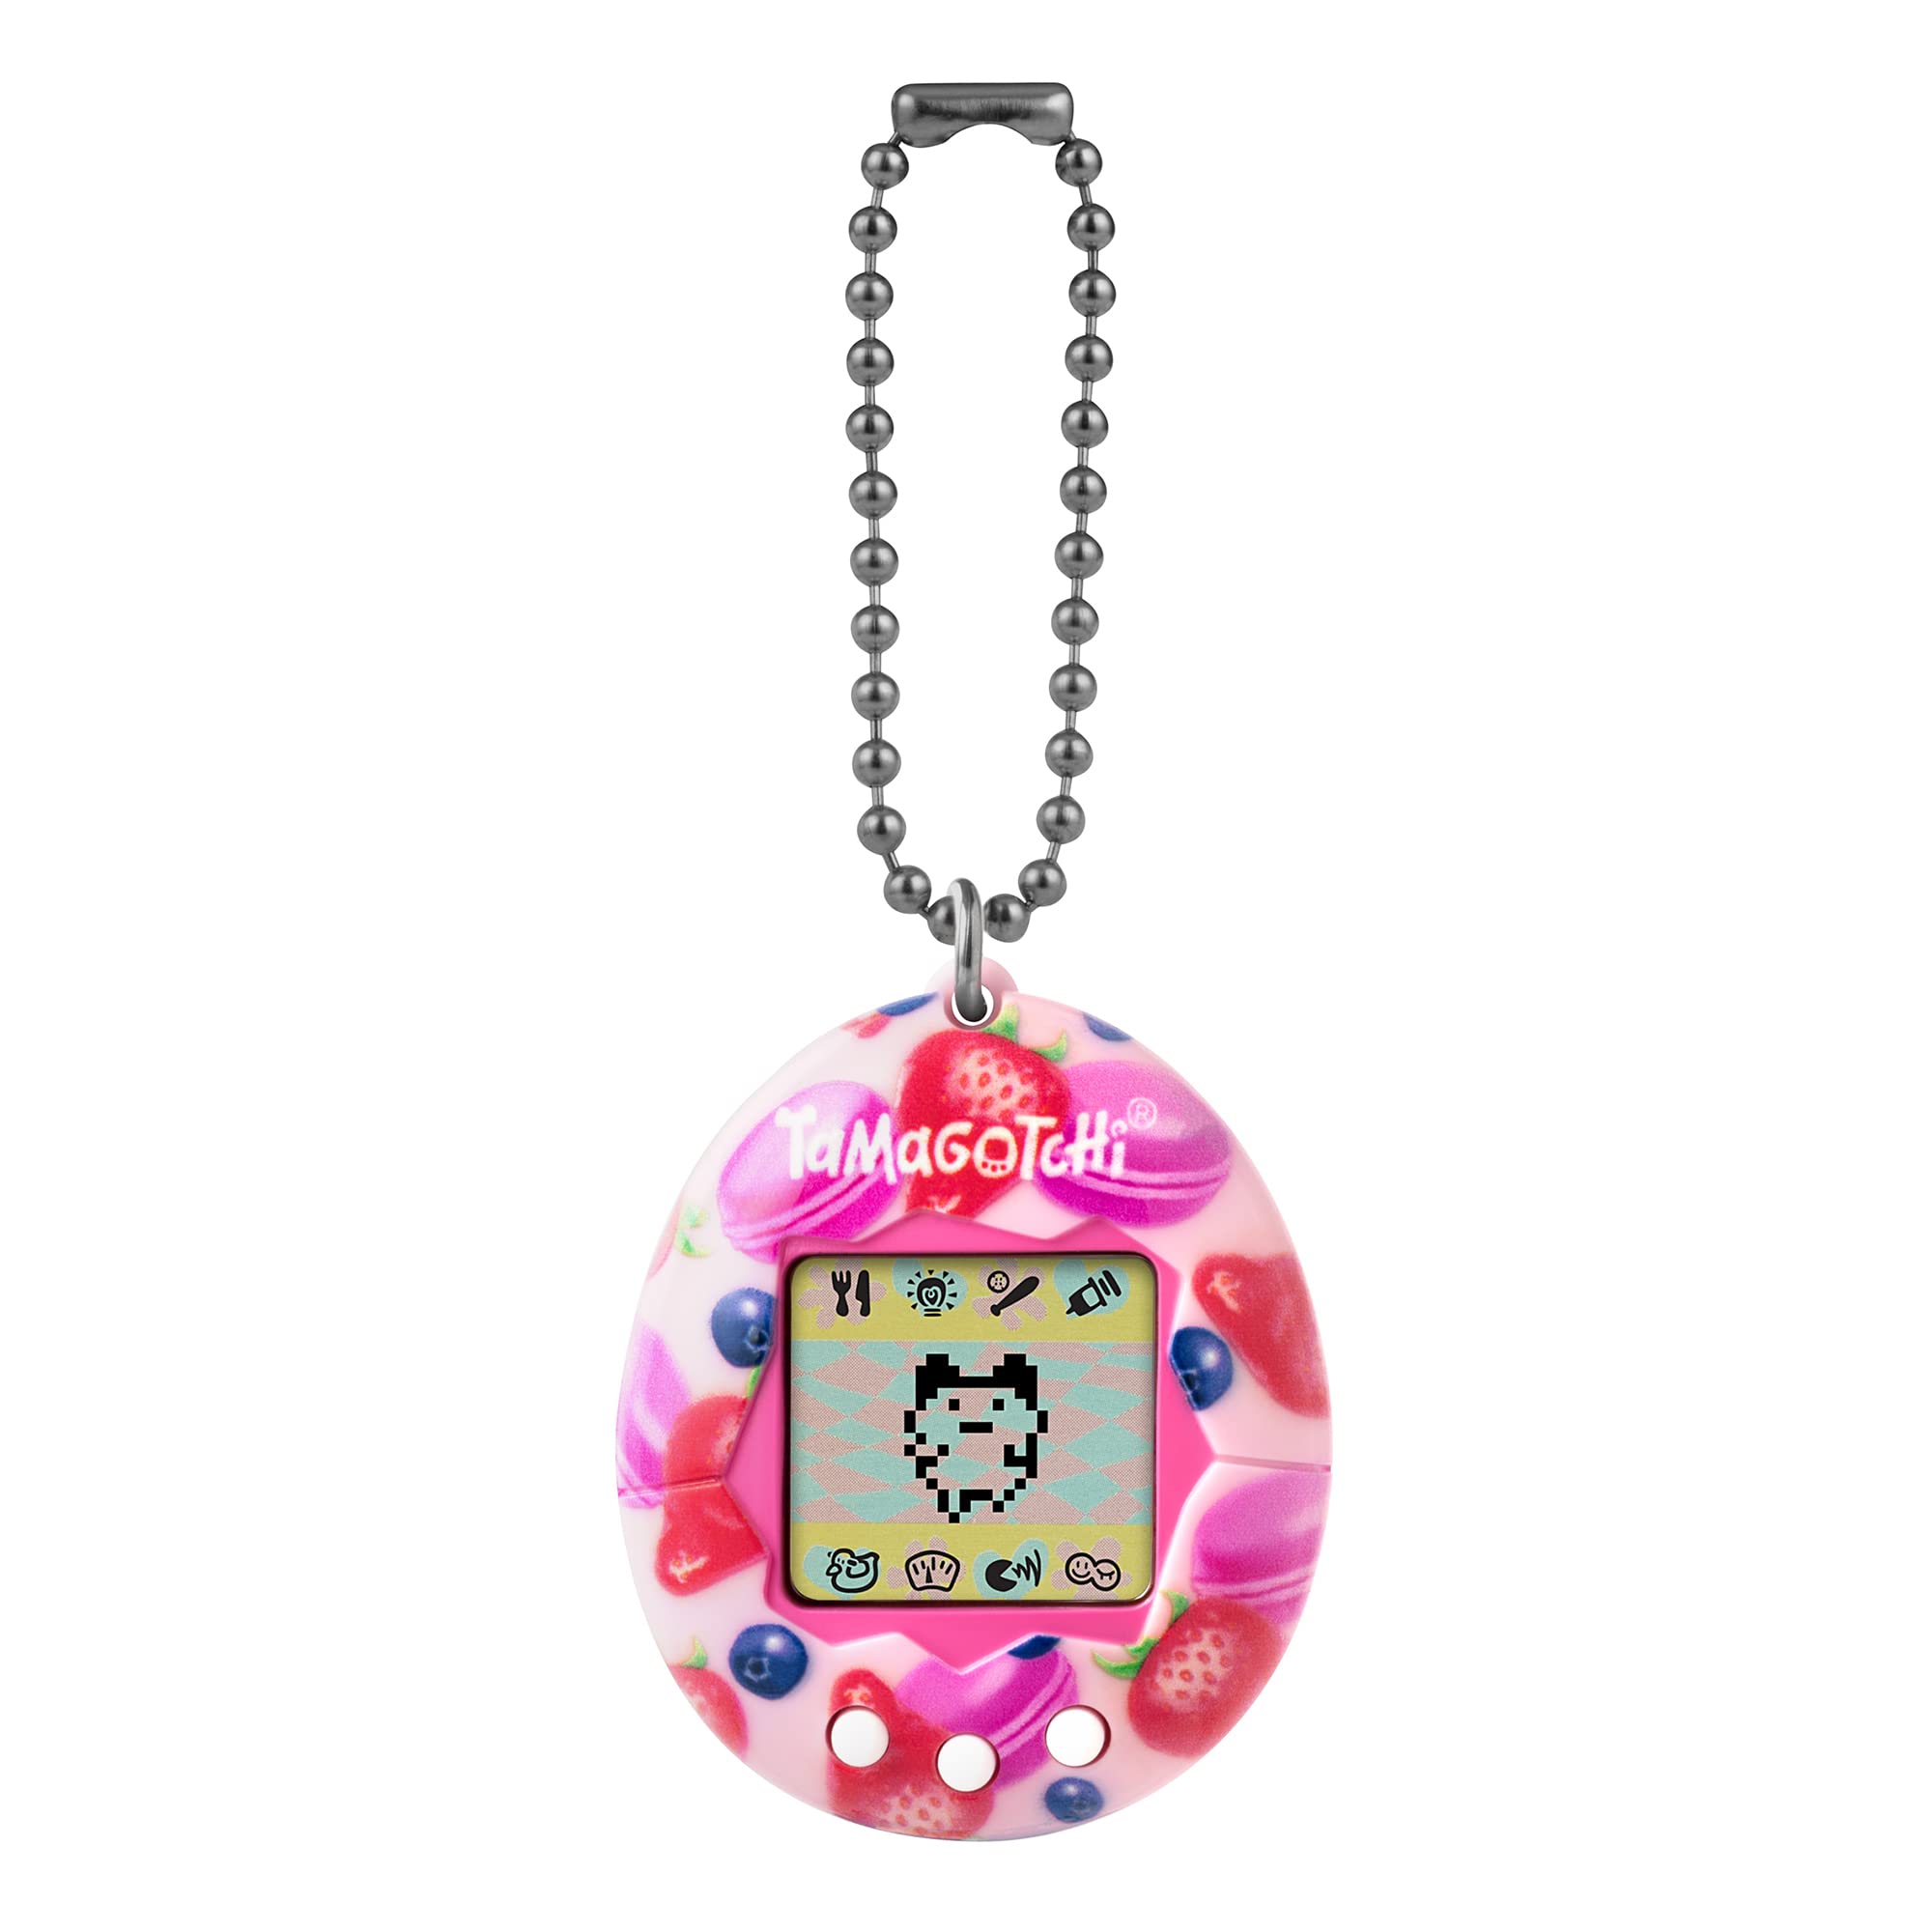 luxe  Bandai - Tamagotchi - Tamagotchi original - Berry Delicious - animal électronique virtuel avec écran couleur, 3 boutons et jeux - 42971 LWmGtl8yR frais